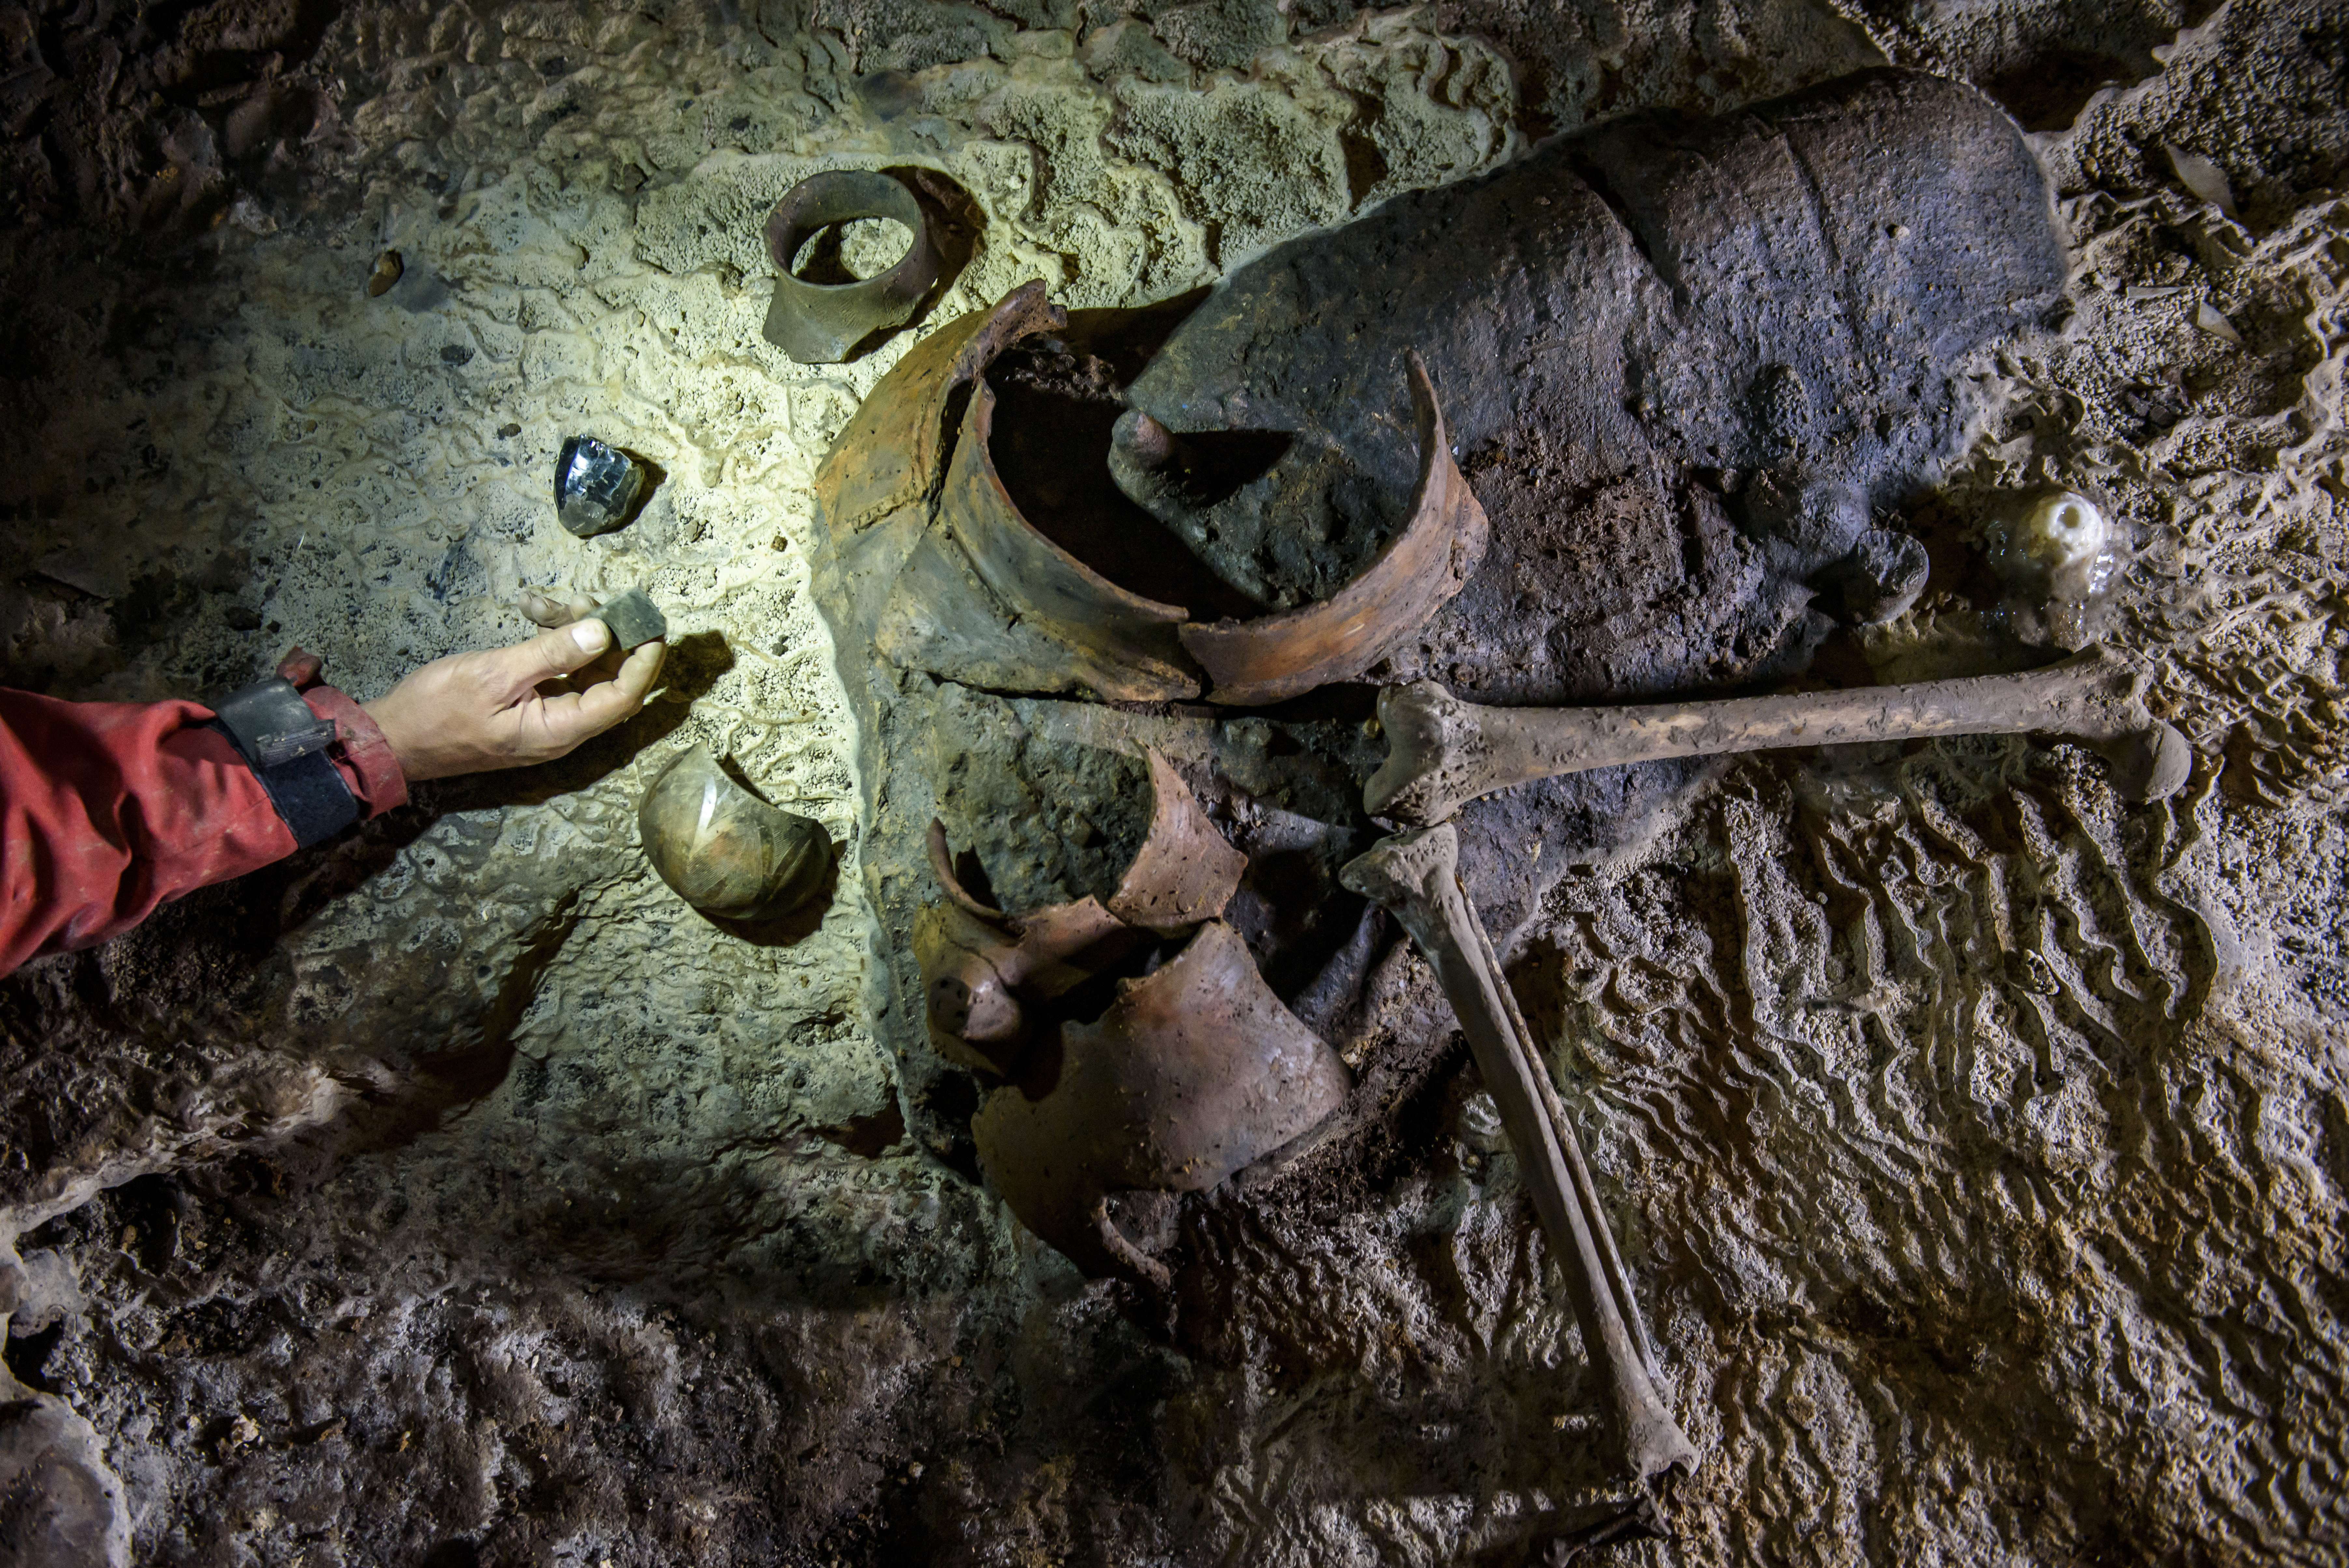 Какую вещь бекки нашли в пещере. "Археологические находки в Германии" Свен Хансен. Неолит находки археологов. Артефакт (археология).